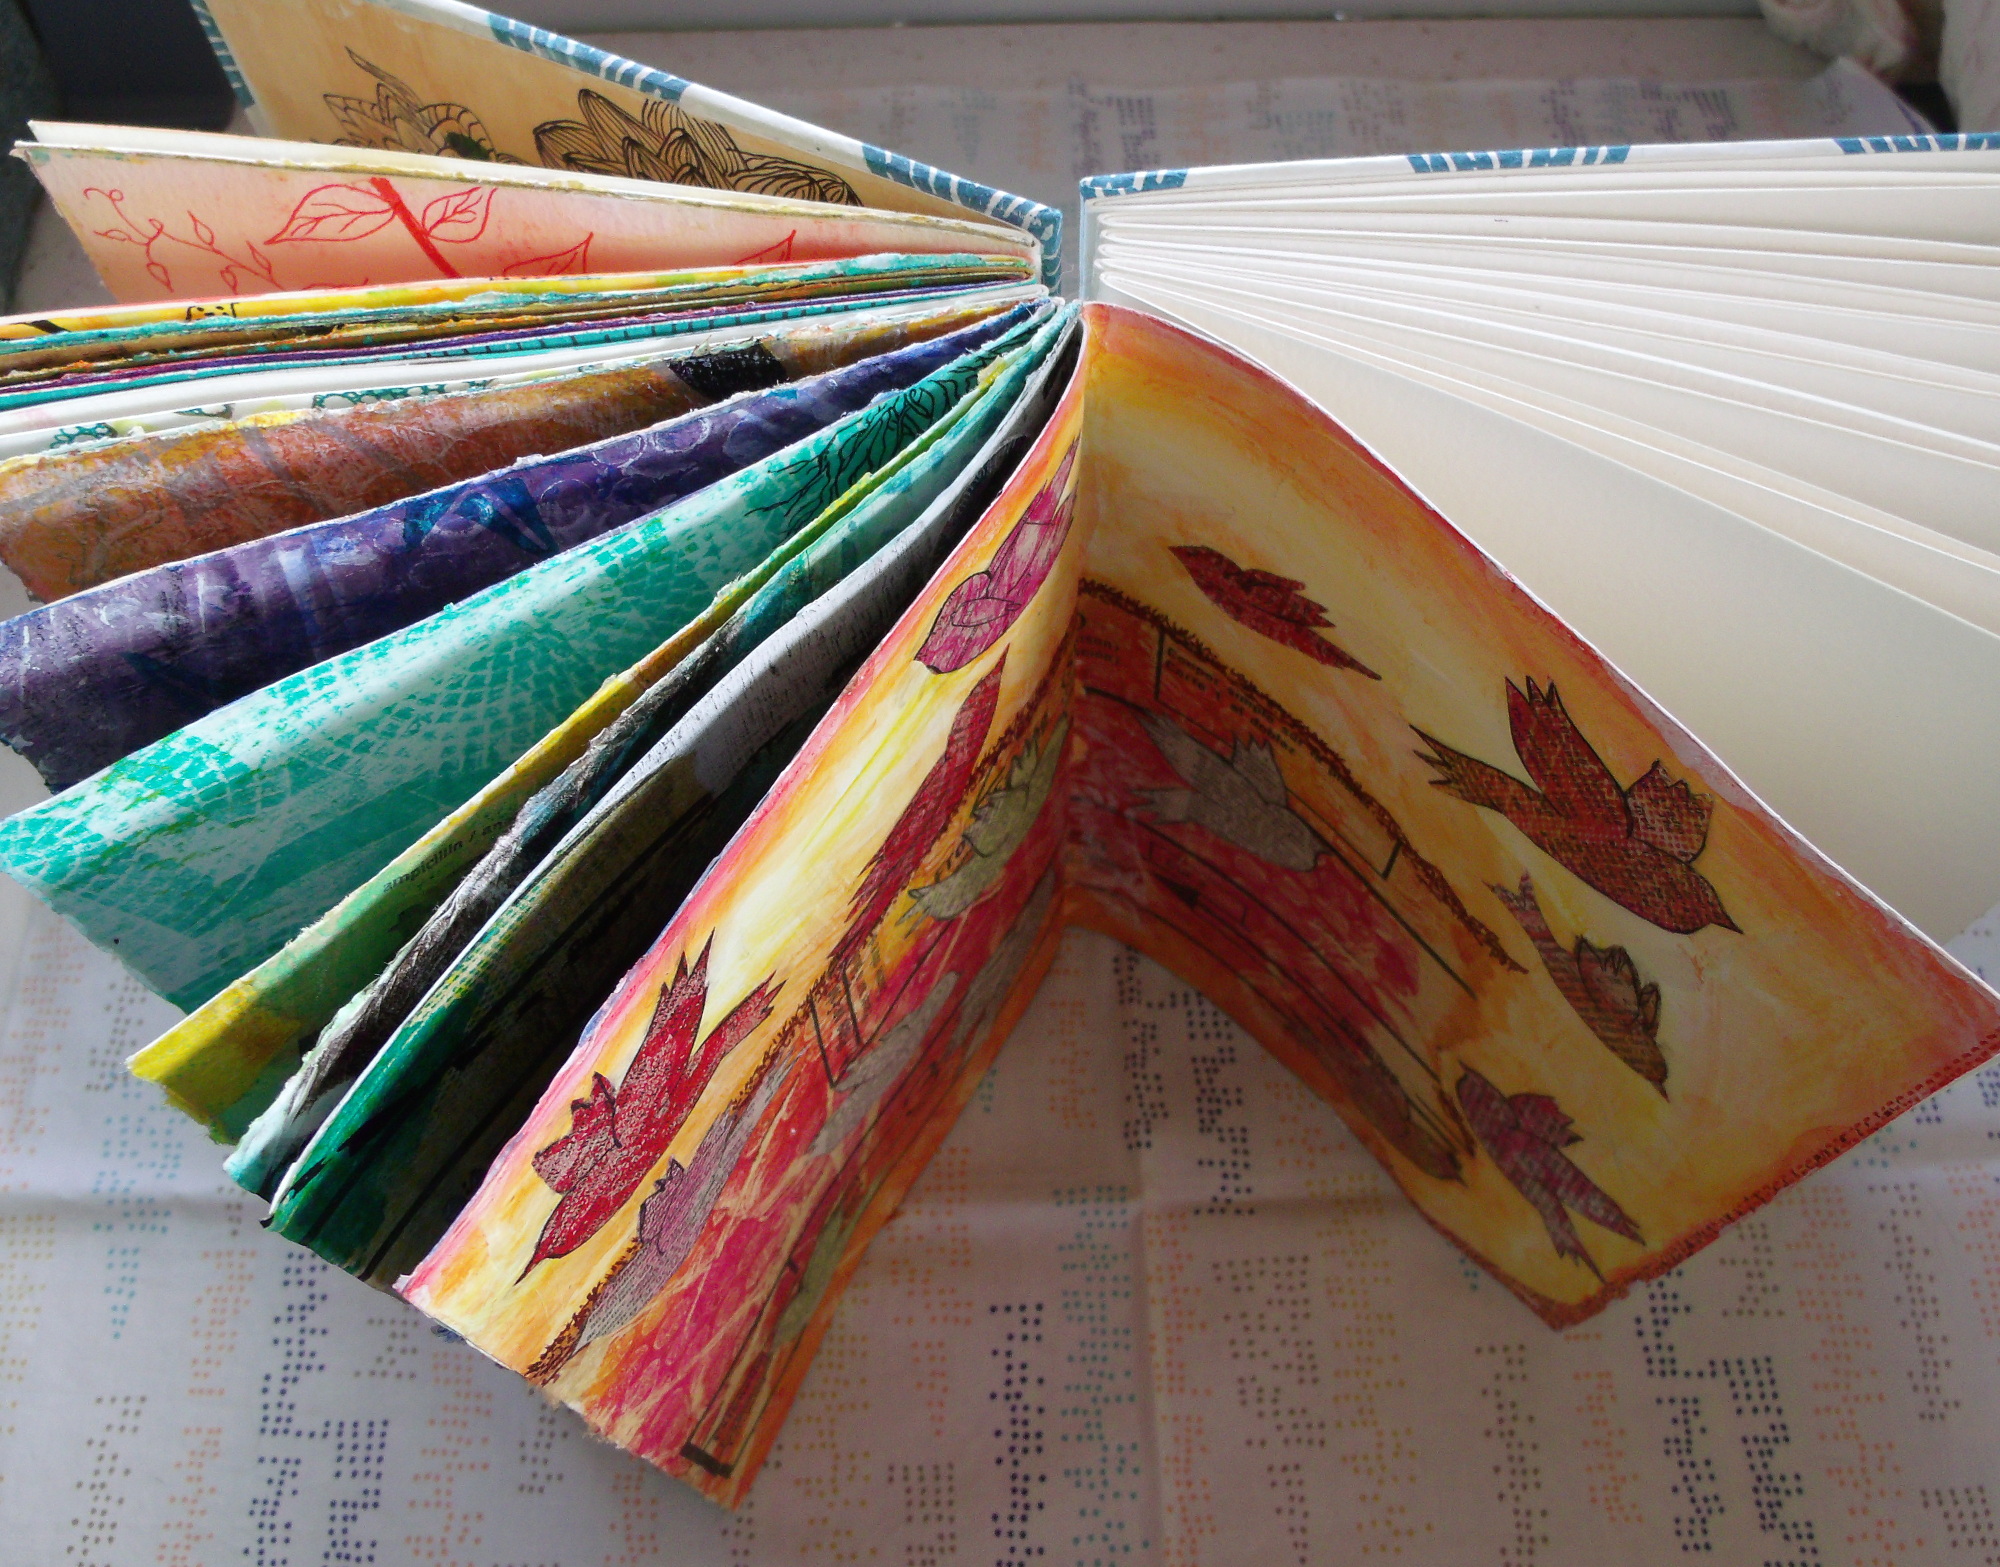 Coptic-stitch handbound art journal, half filled